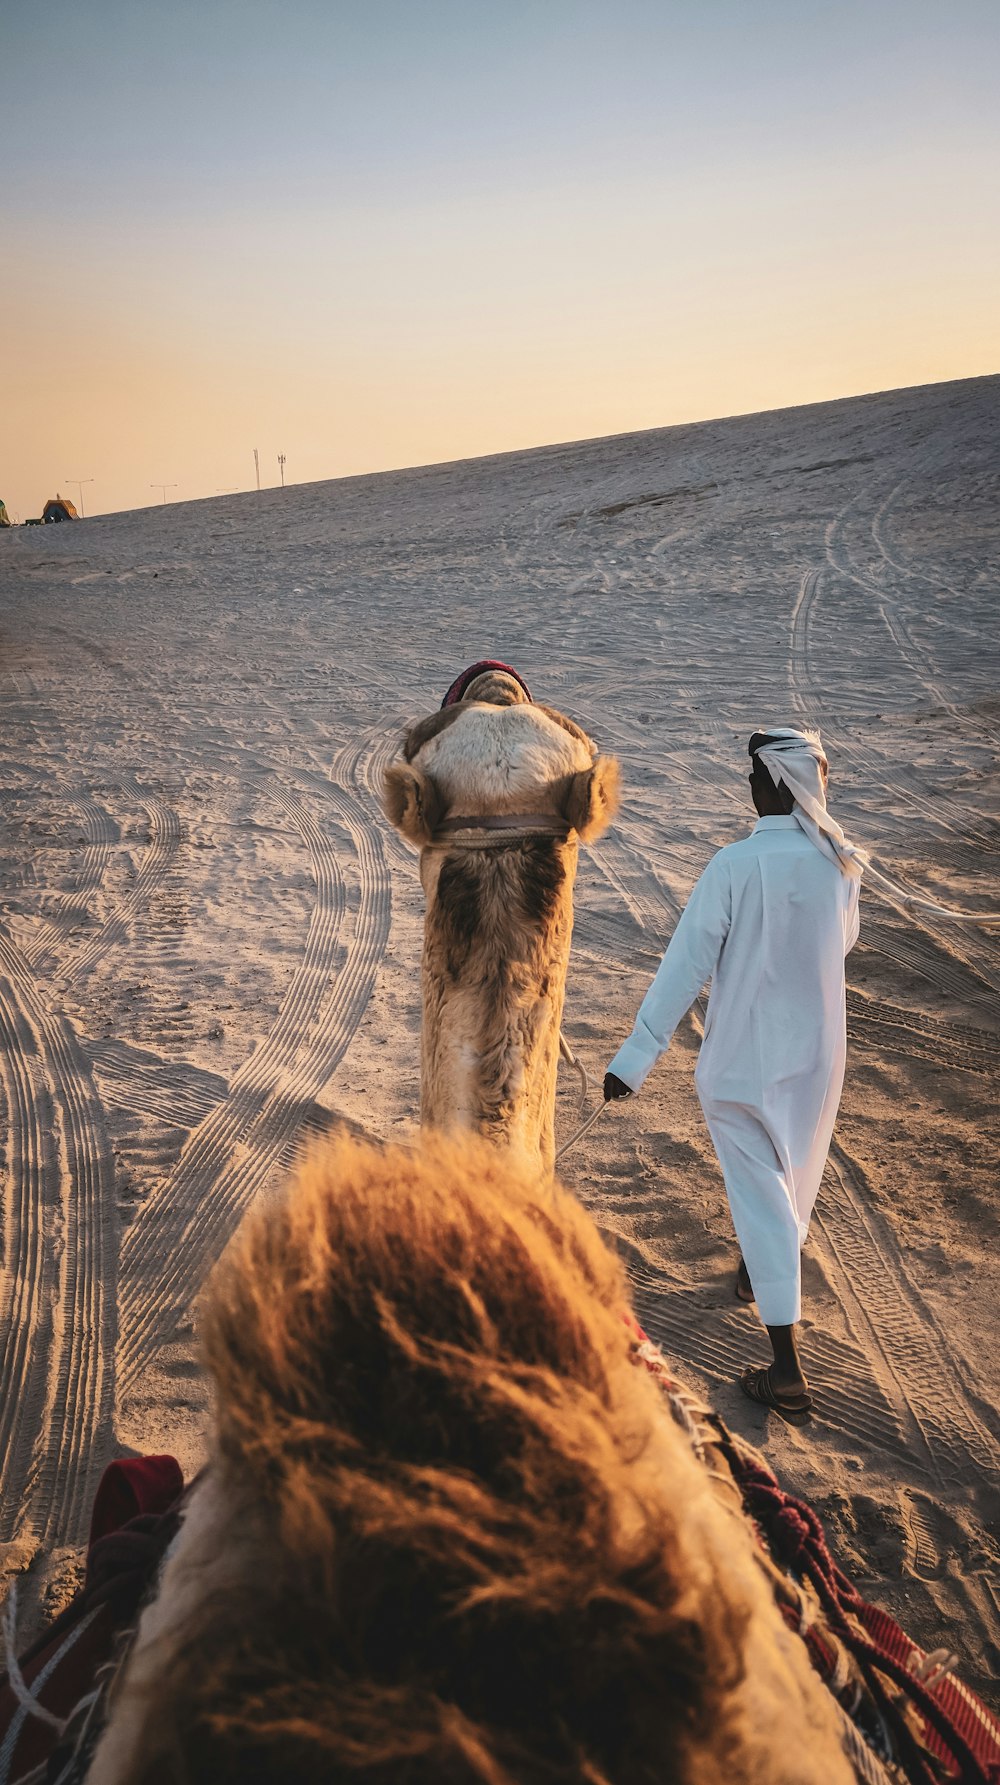 Hombre con túnica blanca de pie junto al camello marrón durante el día